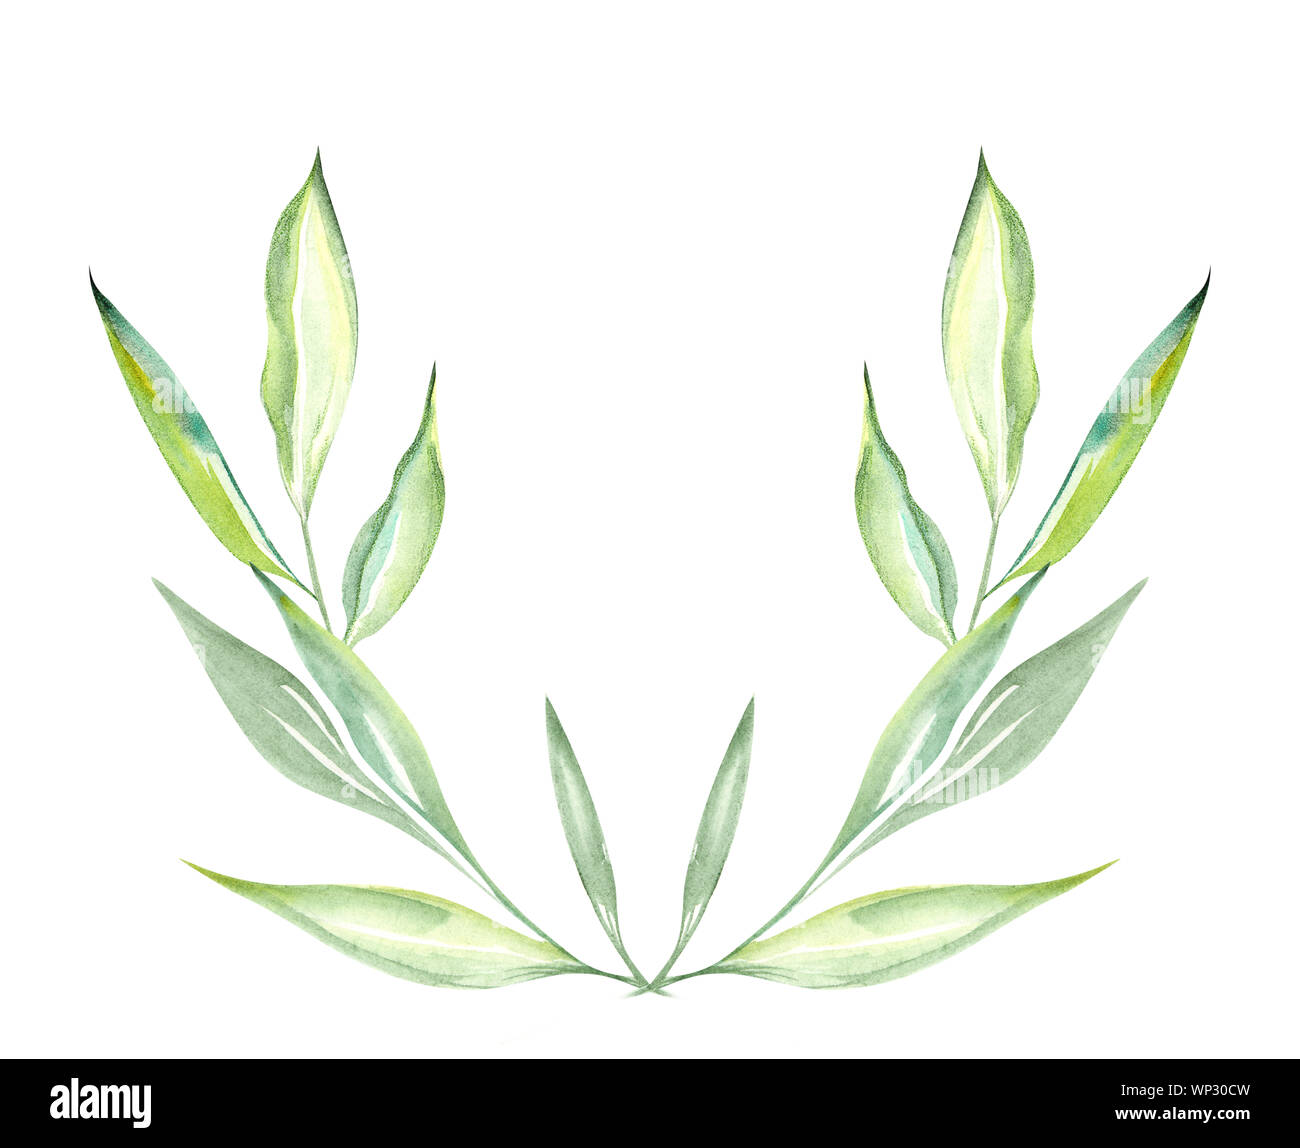 Illustration d'une aquarelle dessin de feuilles de plantes vertes sur fond blanc fond isolé sous la forme d'un demi-cercle floral Banque D'Images